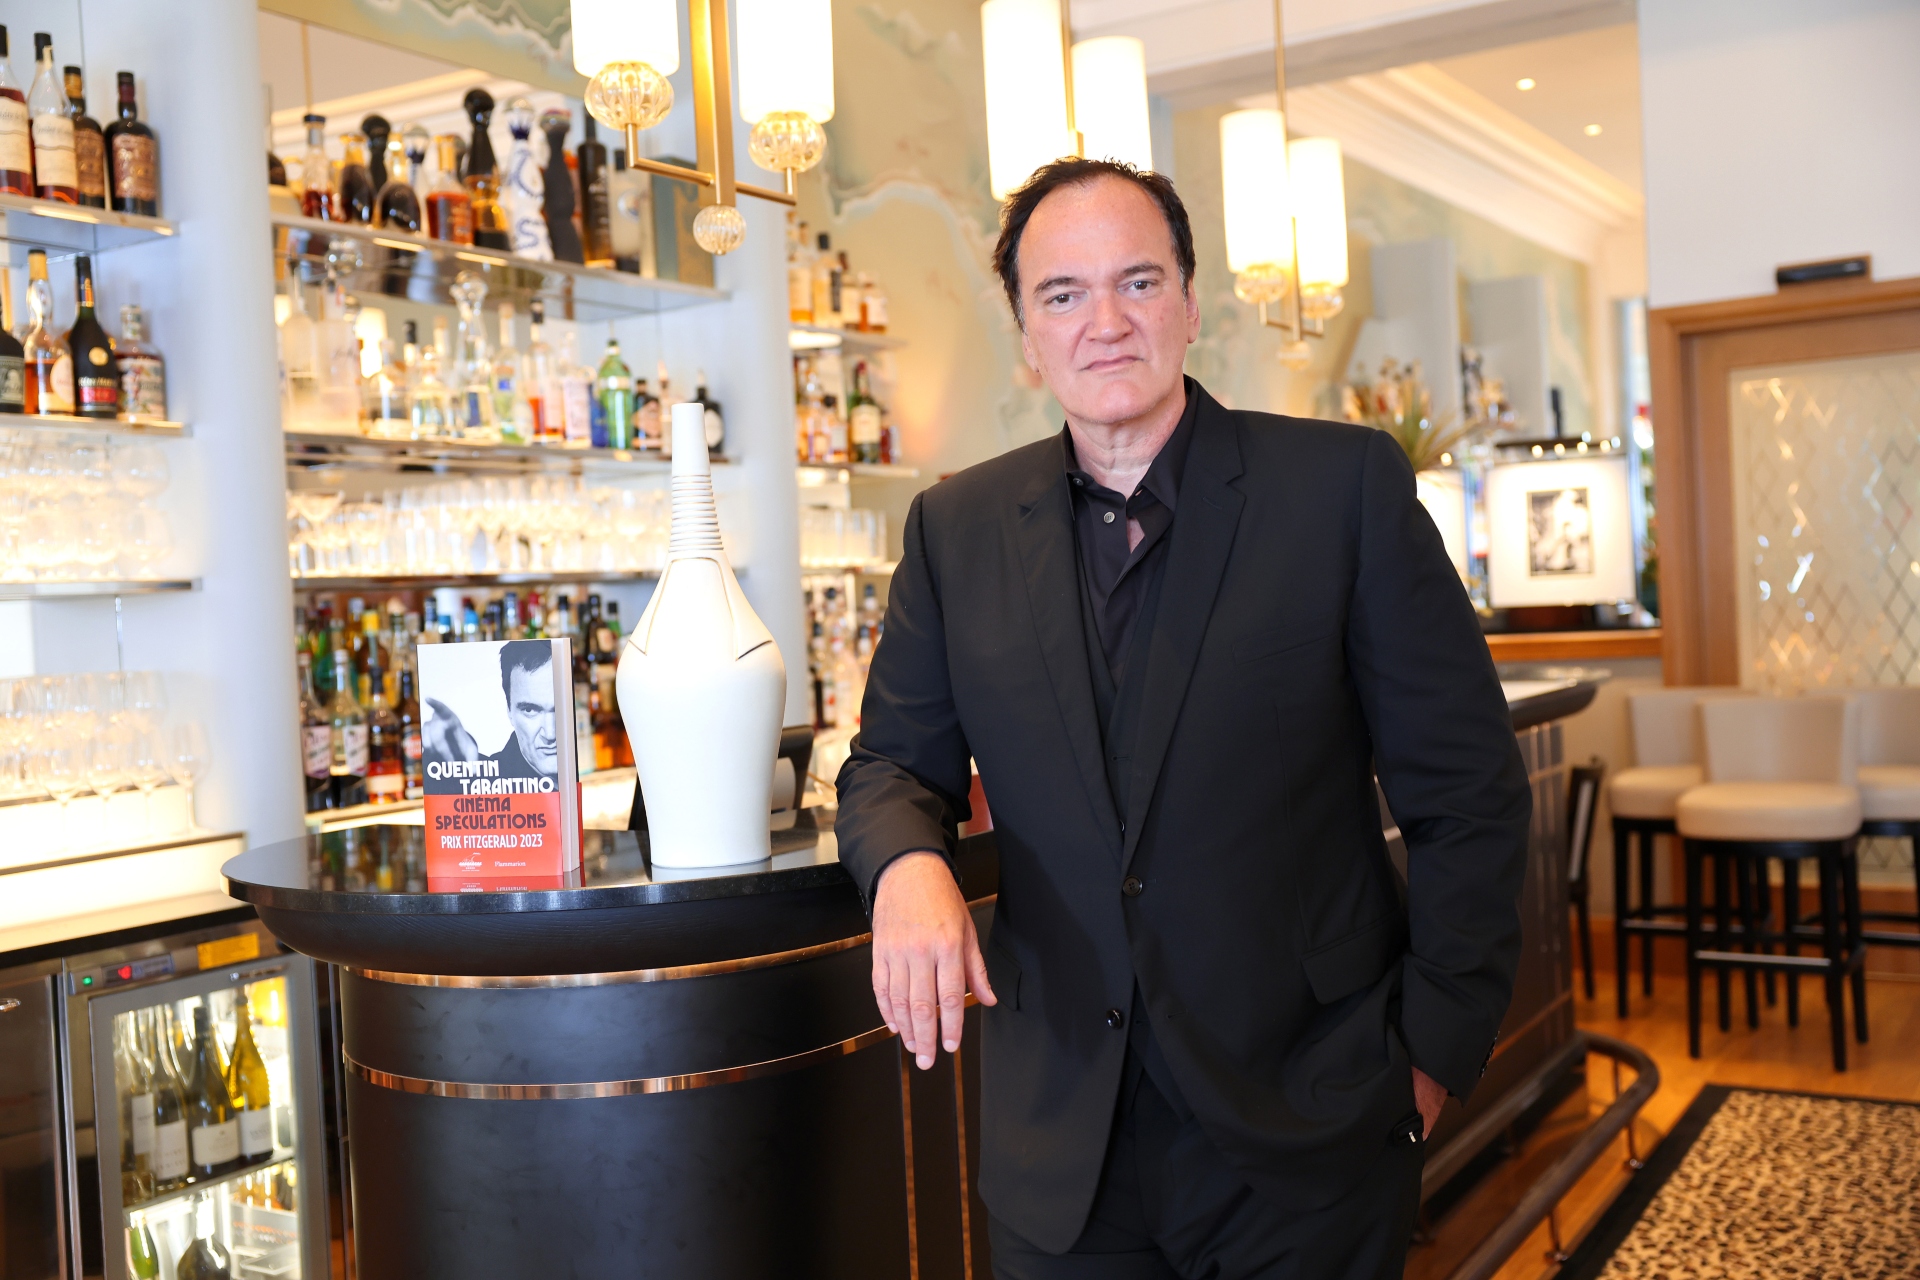 Quentin Tarantino es conocido por revitalizar carreras 